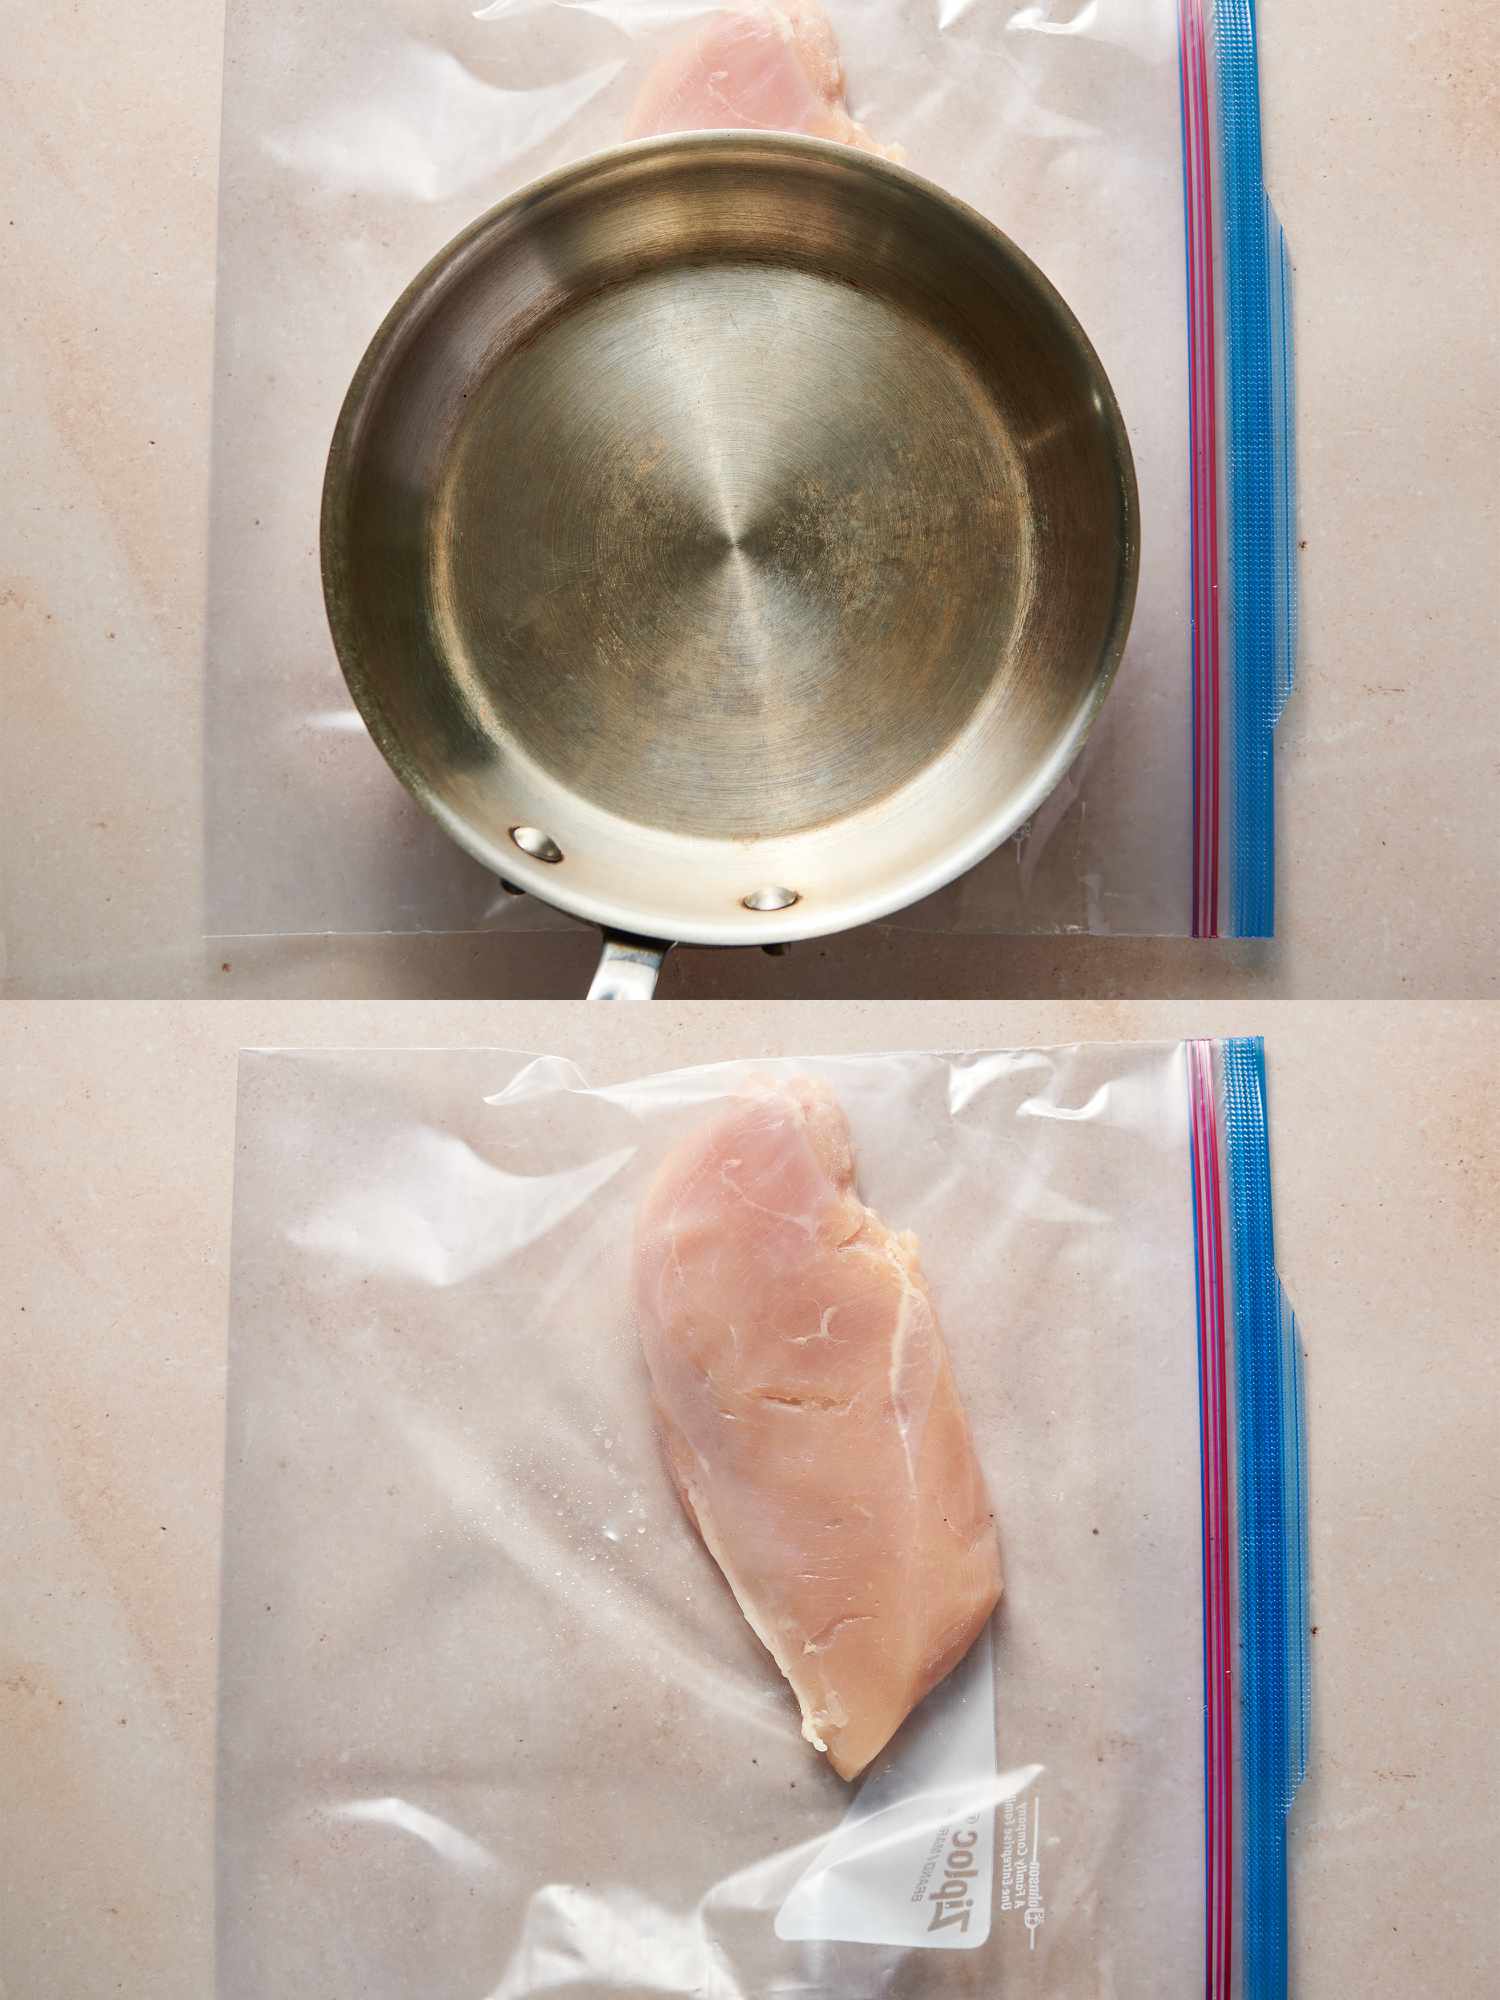 鸡胸肉捣碎成一个更厚的¾英寸高储放在可再次密封的塑料袋内gydF4y2Ba